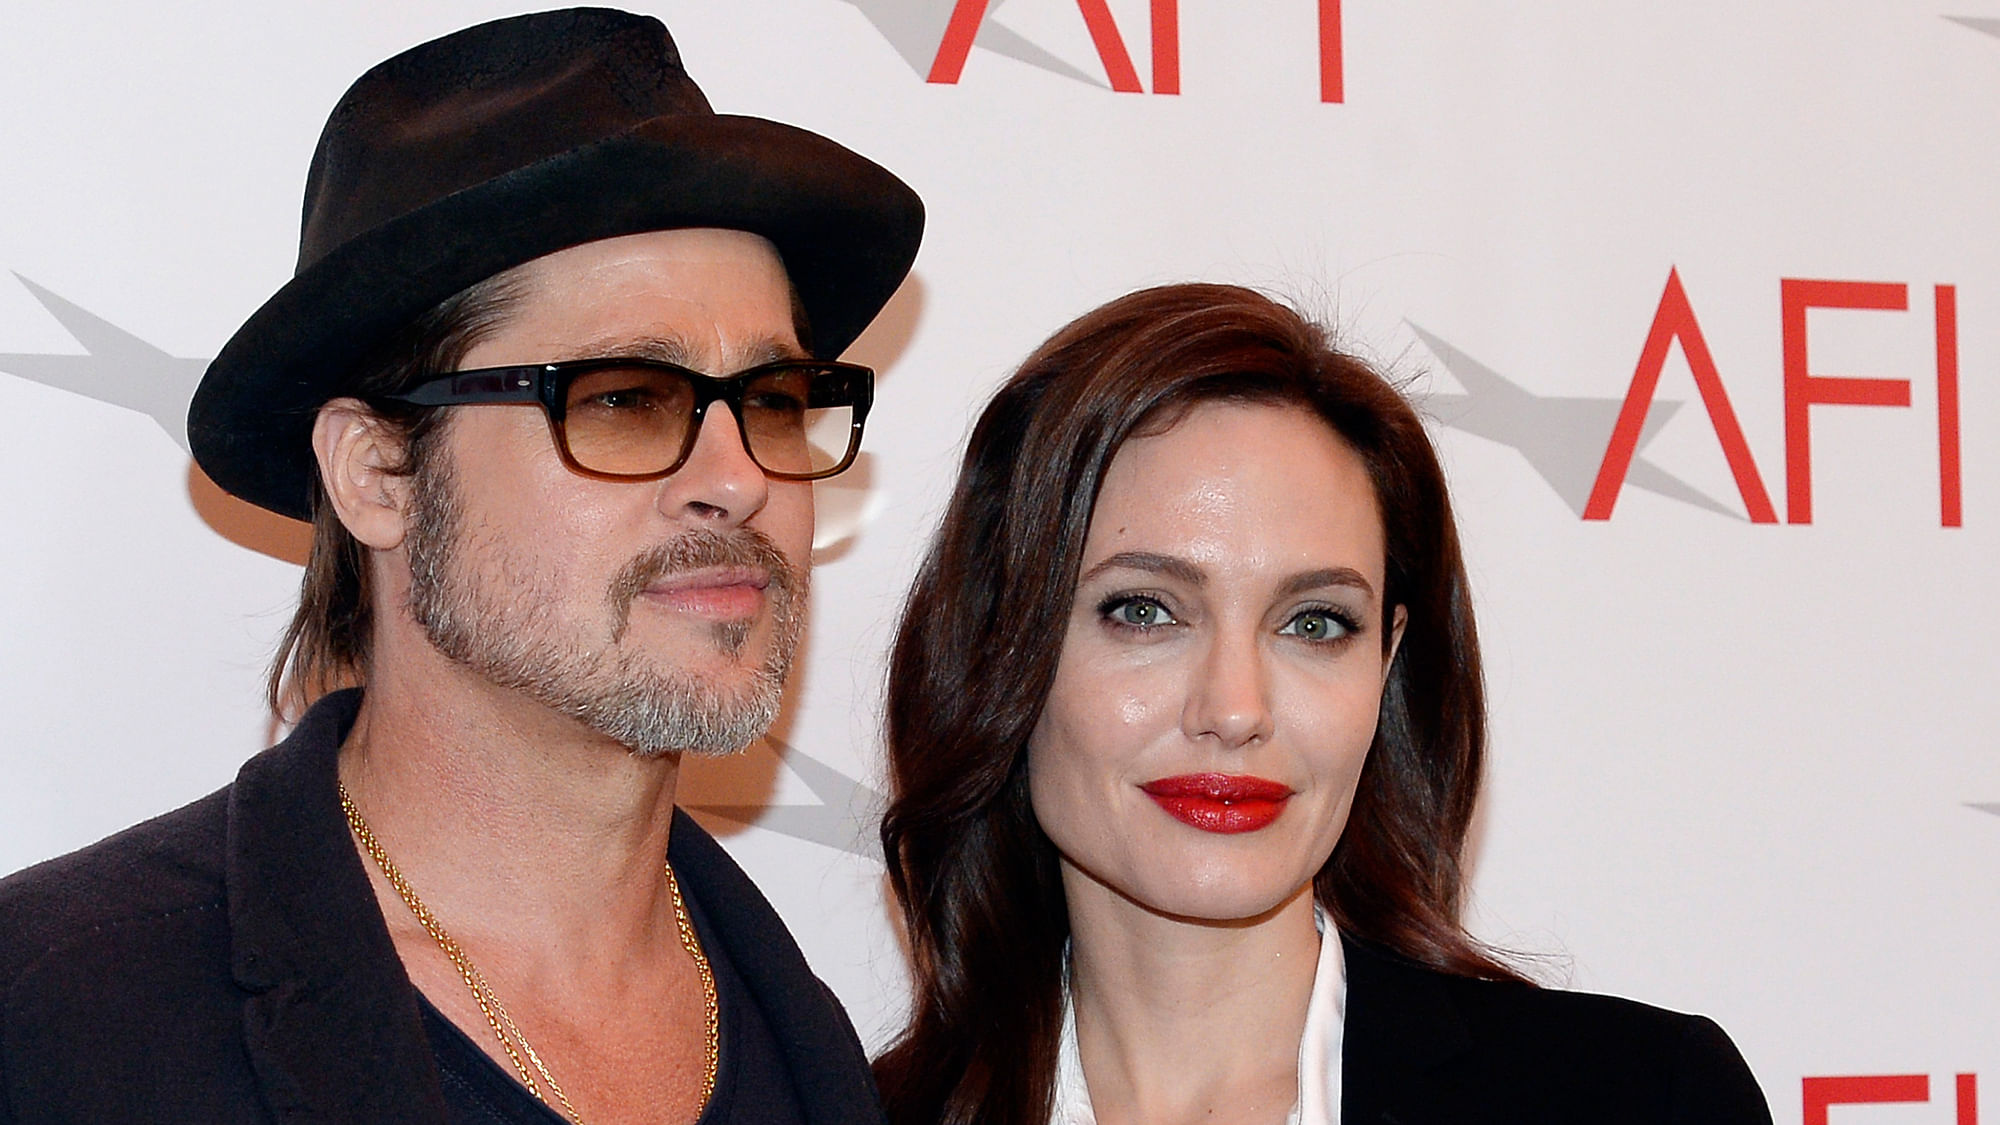 Actor Brad Pitt and actress/director Angelina Jolie pose at the AFI Awards 2014. (Photo: Reuters)